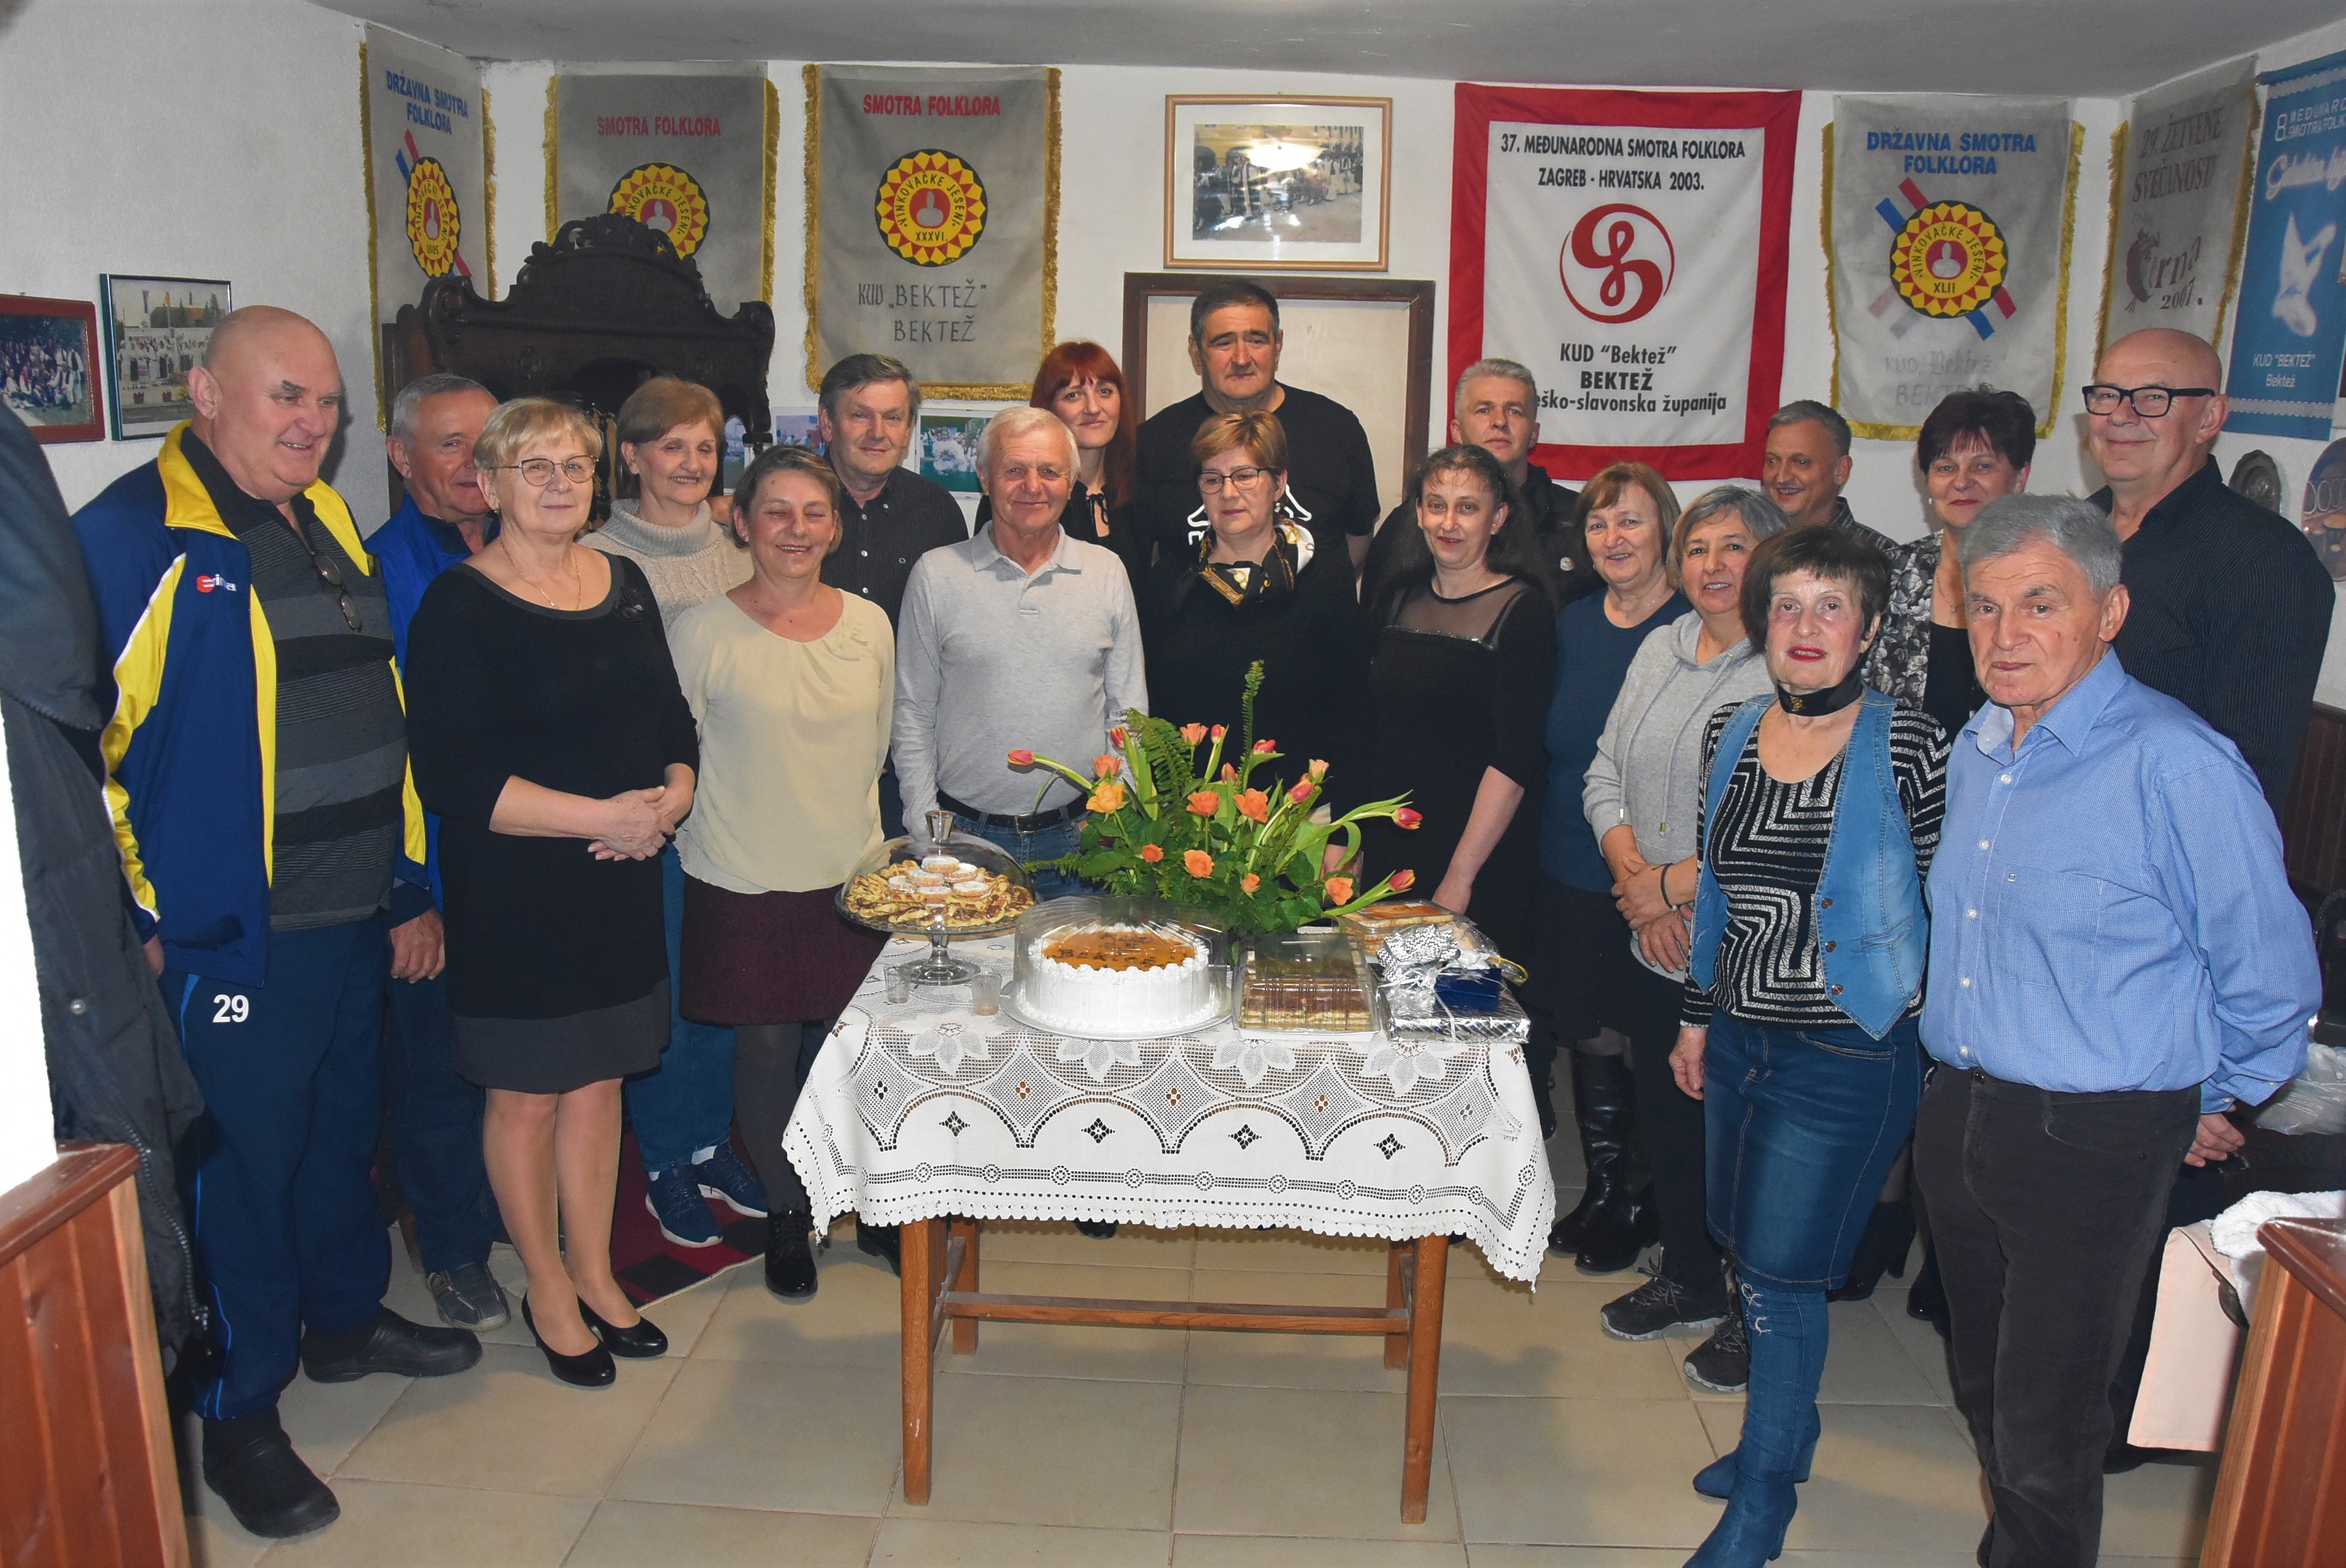 Požega.eu | Vesela bekteška družina proslavila 25. obljetnicu djelovanja /FOTO/